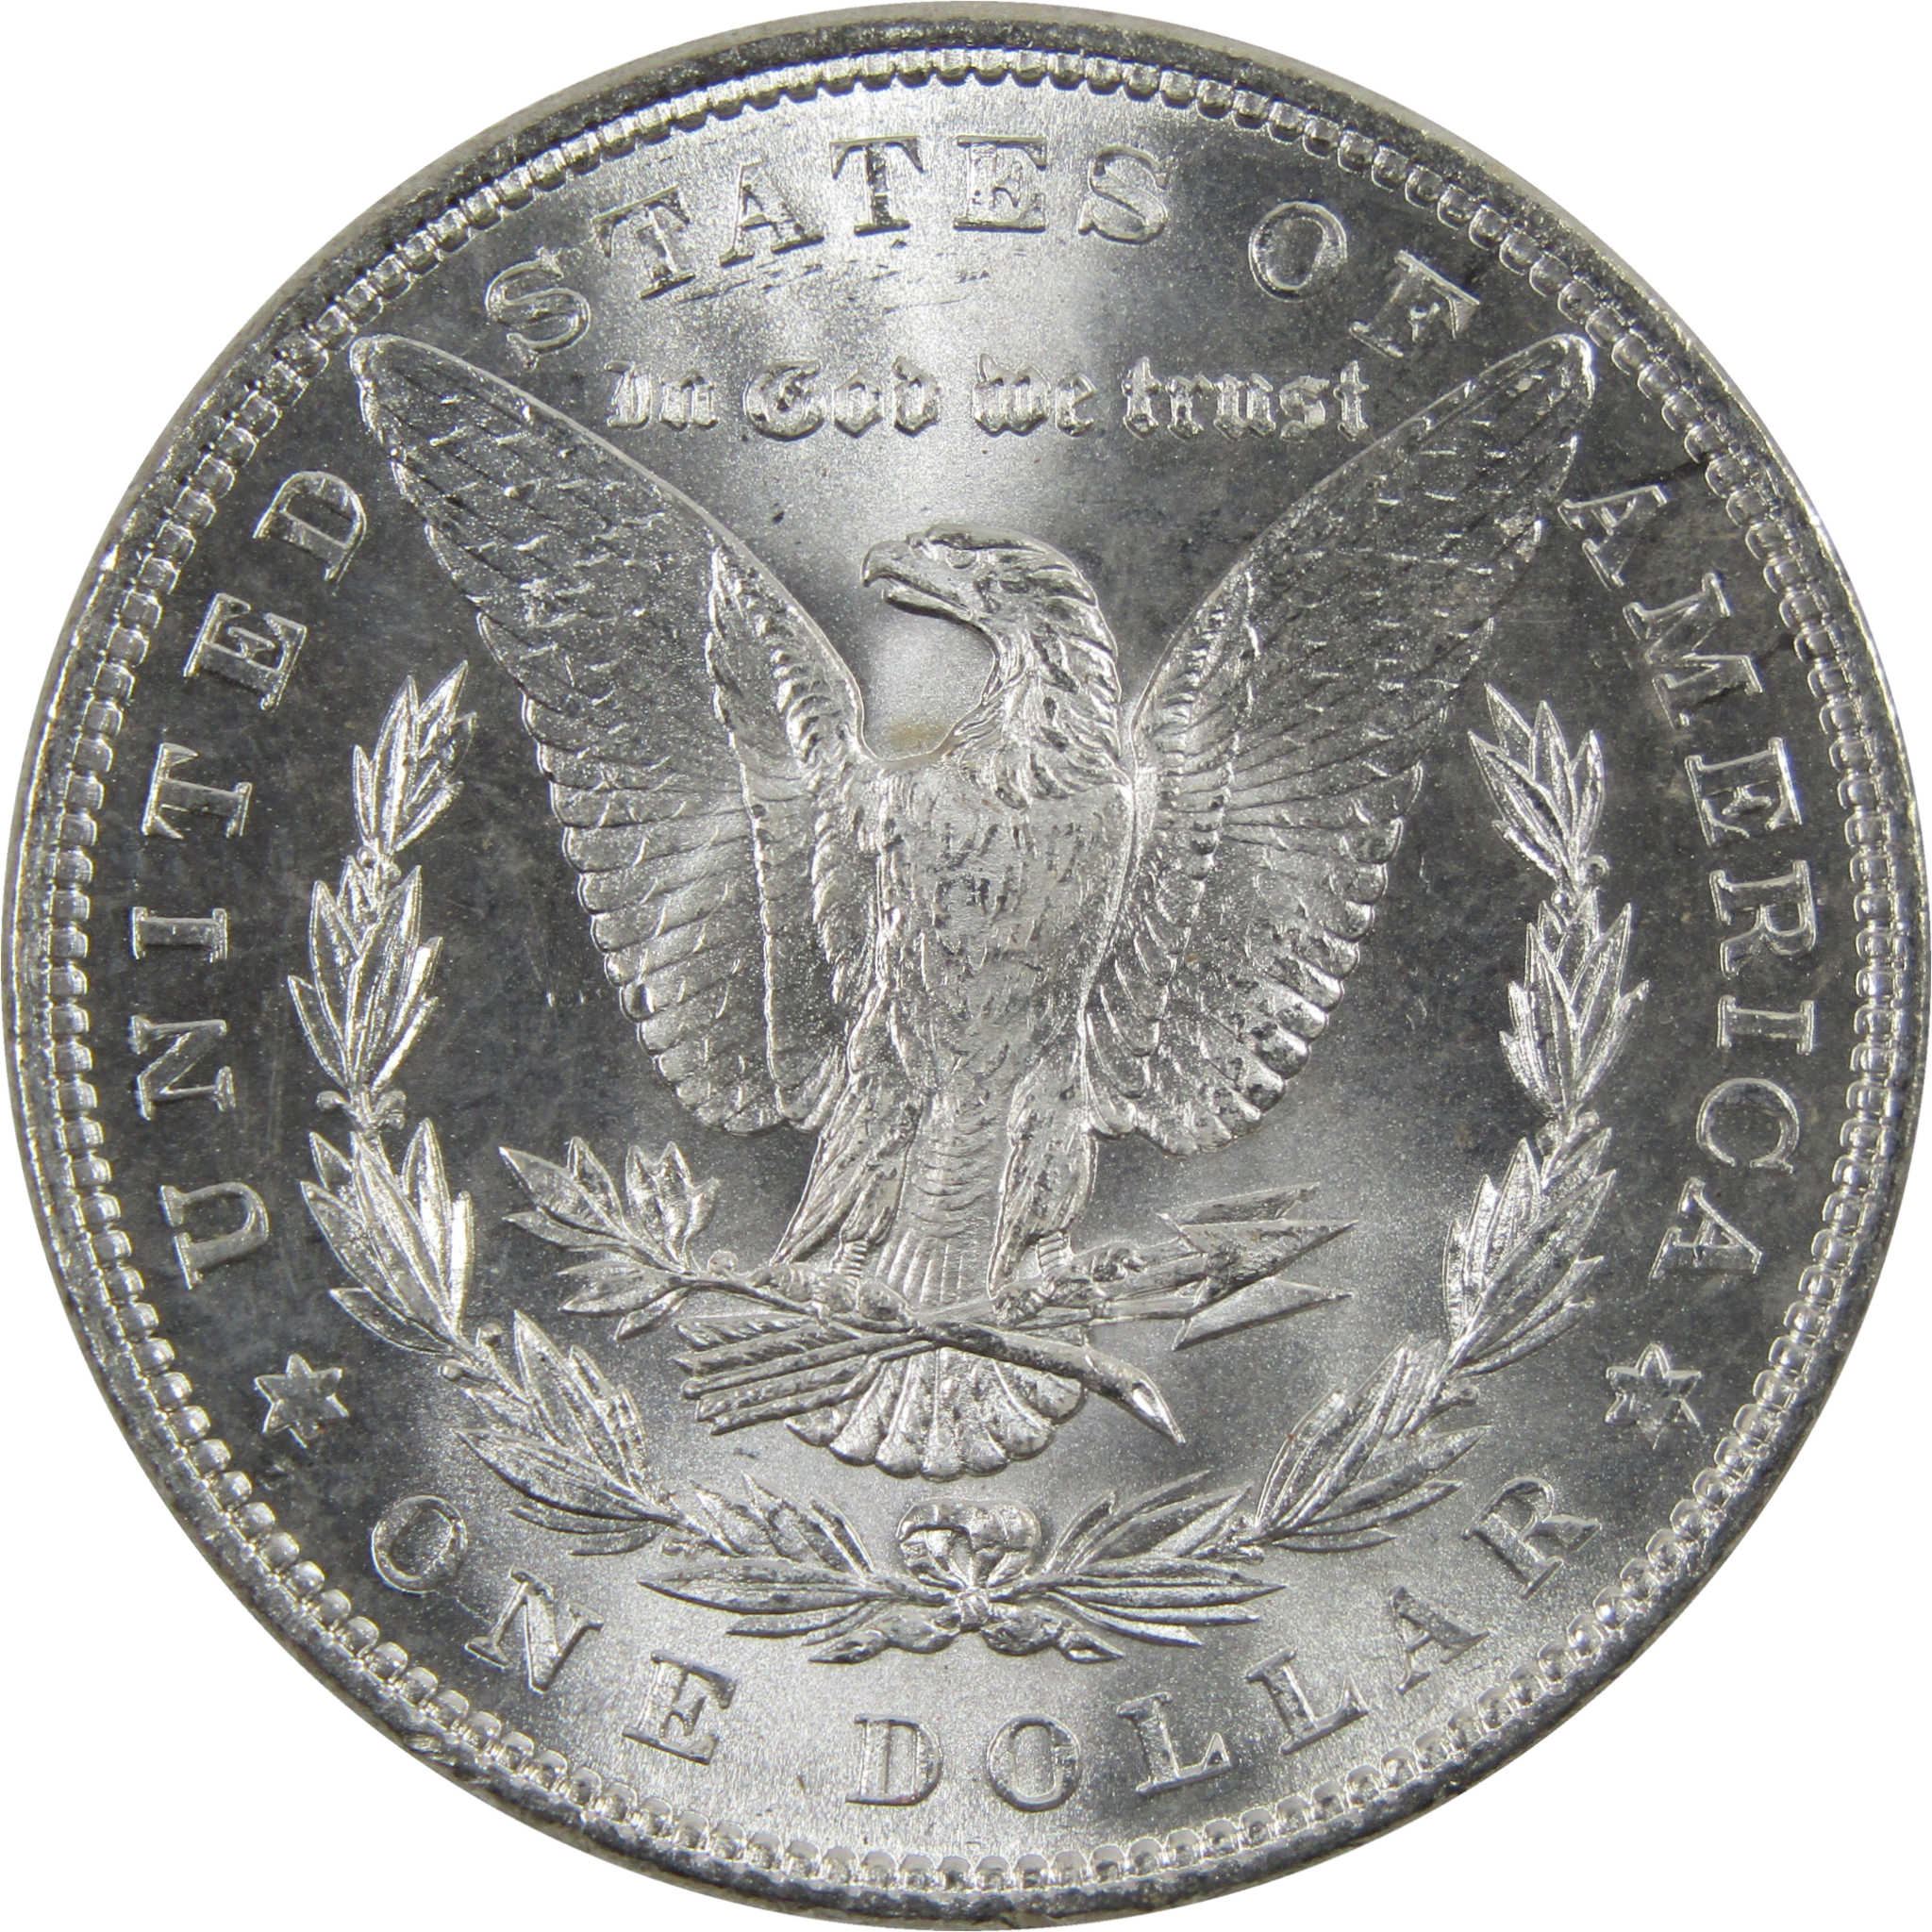 1884 Morgan Dollar BU Uncirculated 90% Silver $1 Coin SKU:I6008 - Morgan coin - Morgan silver dollar - Morgan silver dollar for sale - Profile Coins &amp; Collectibles